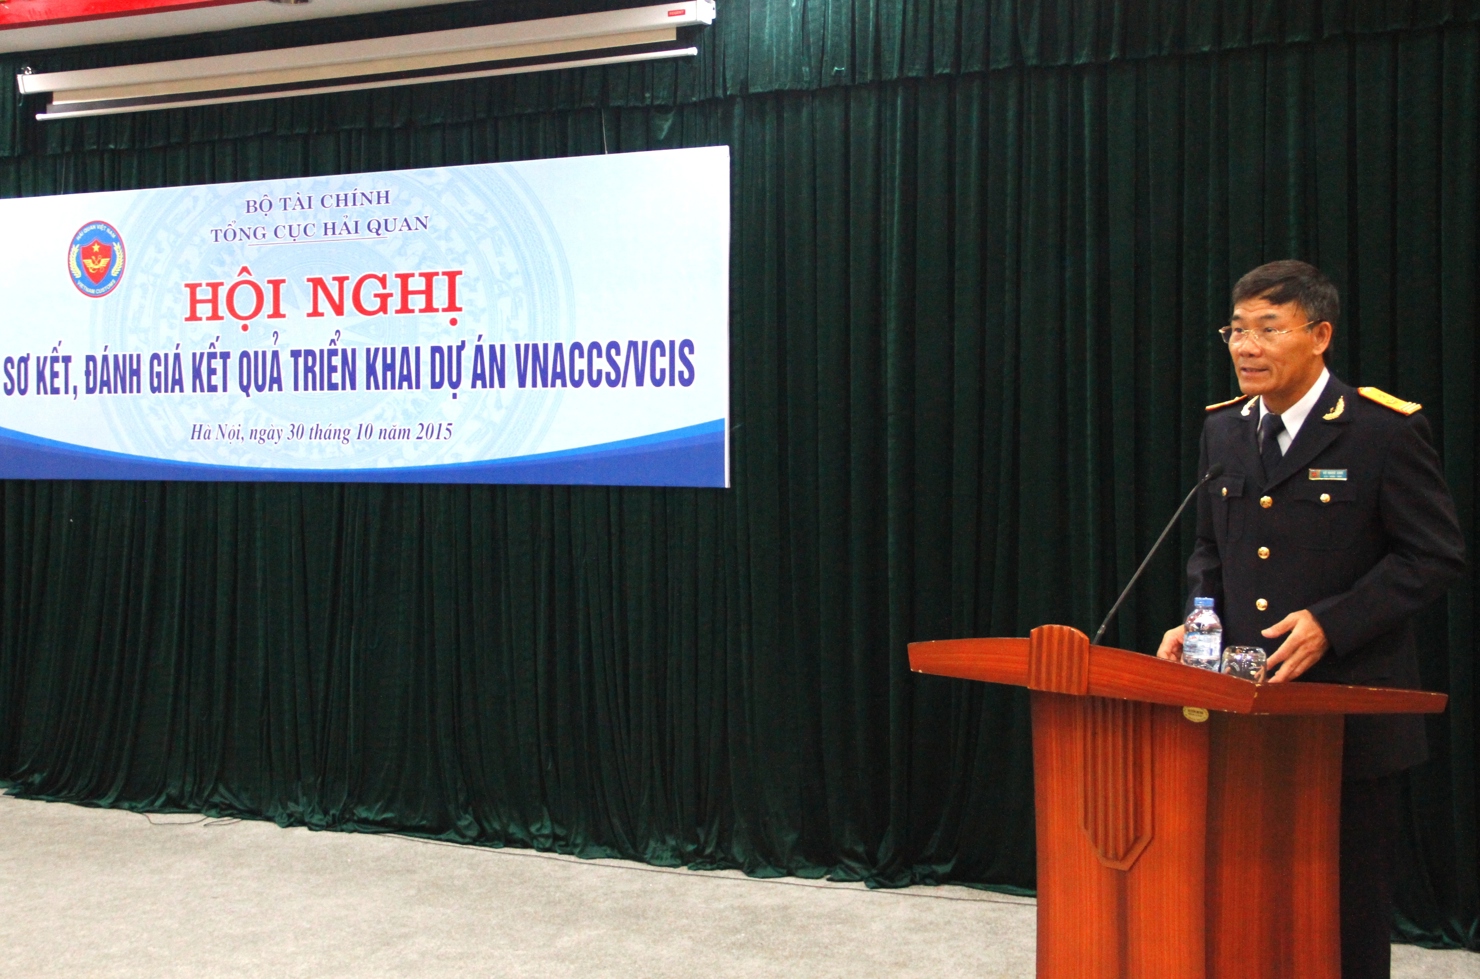   Phó Tổng cục trưởng Vũ Ngọc Anh khẳng định dự án VNACCS/VCIS đã được triển khai thành công. 